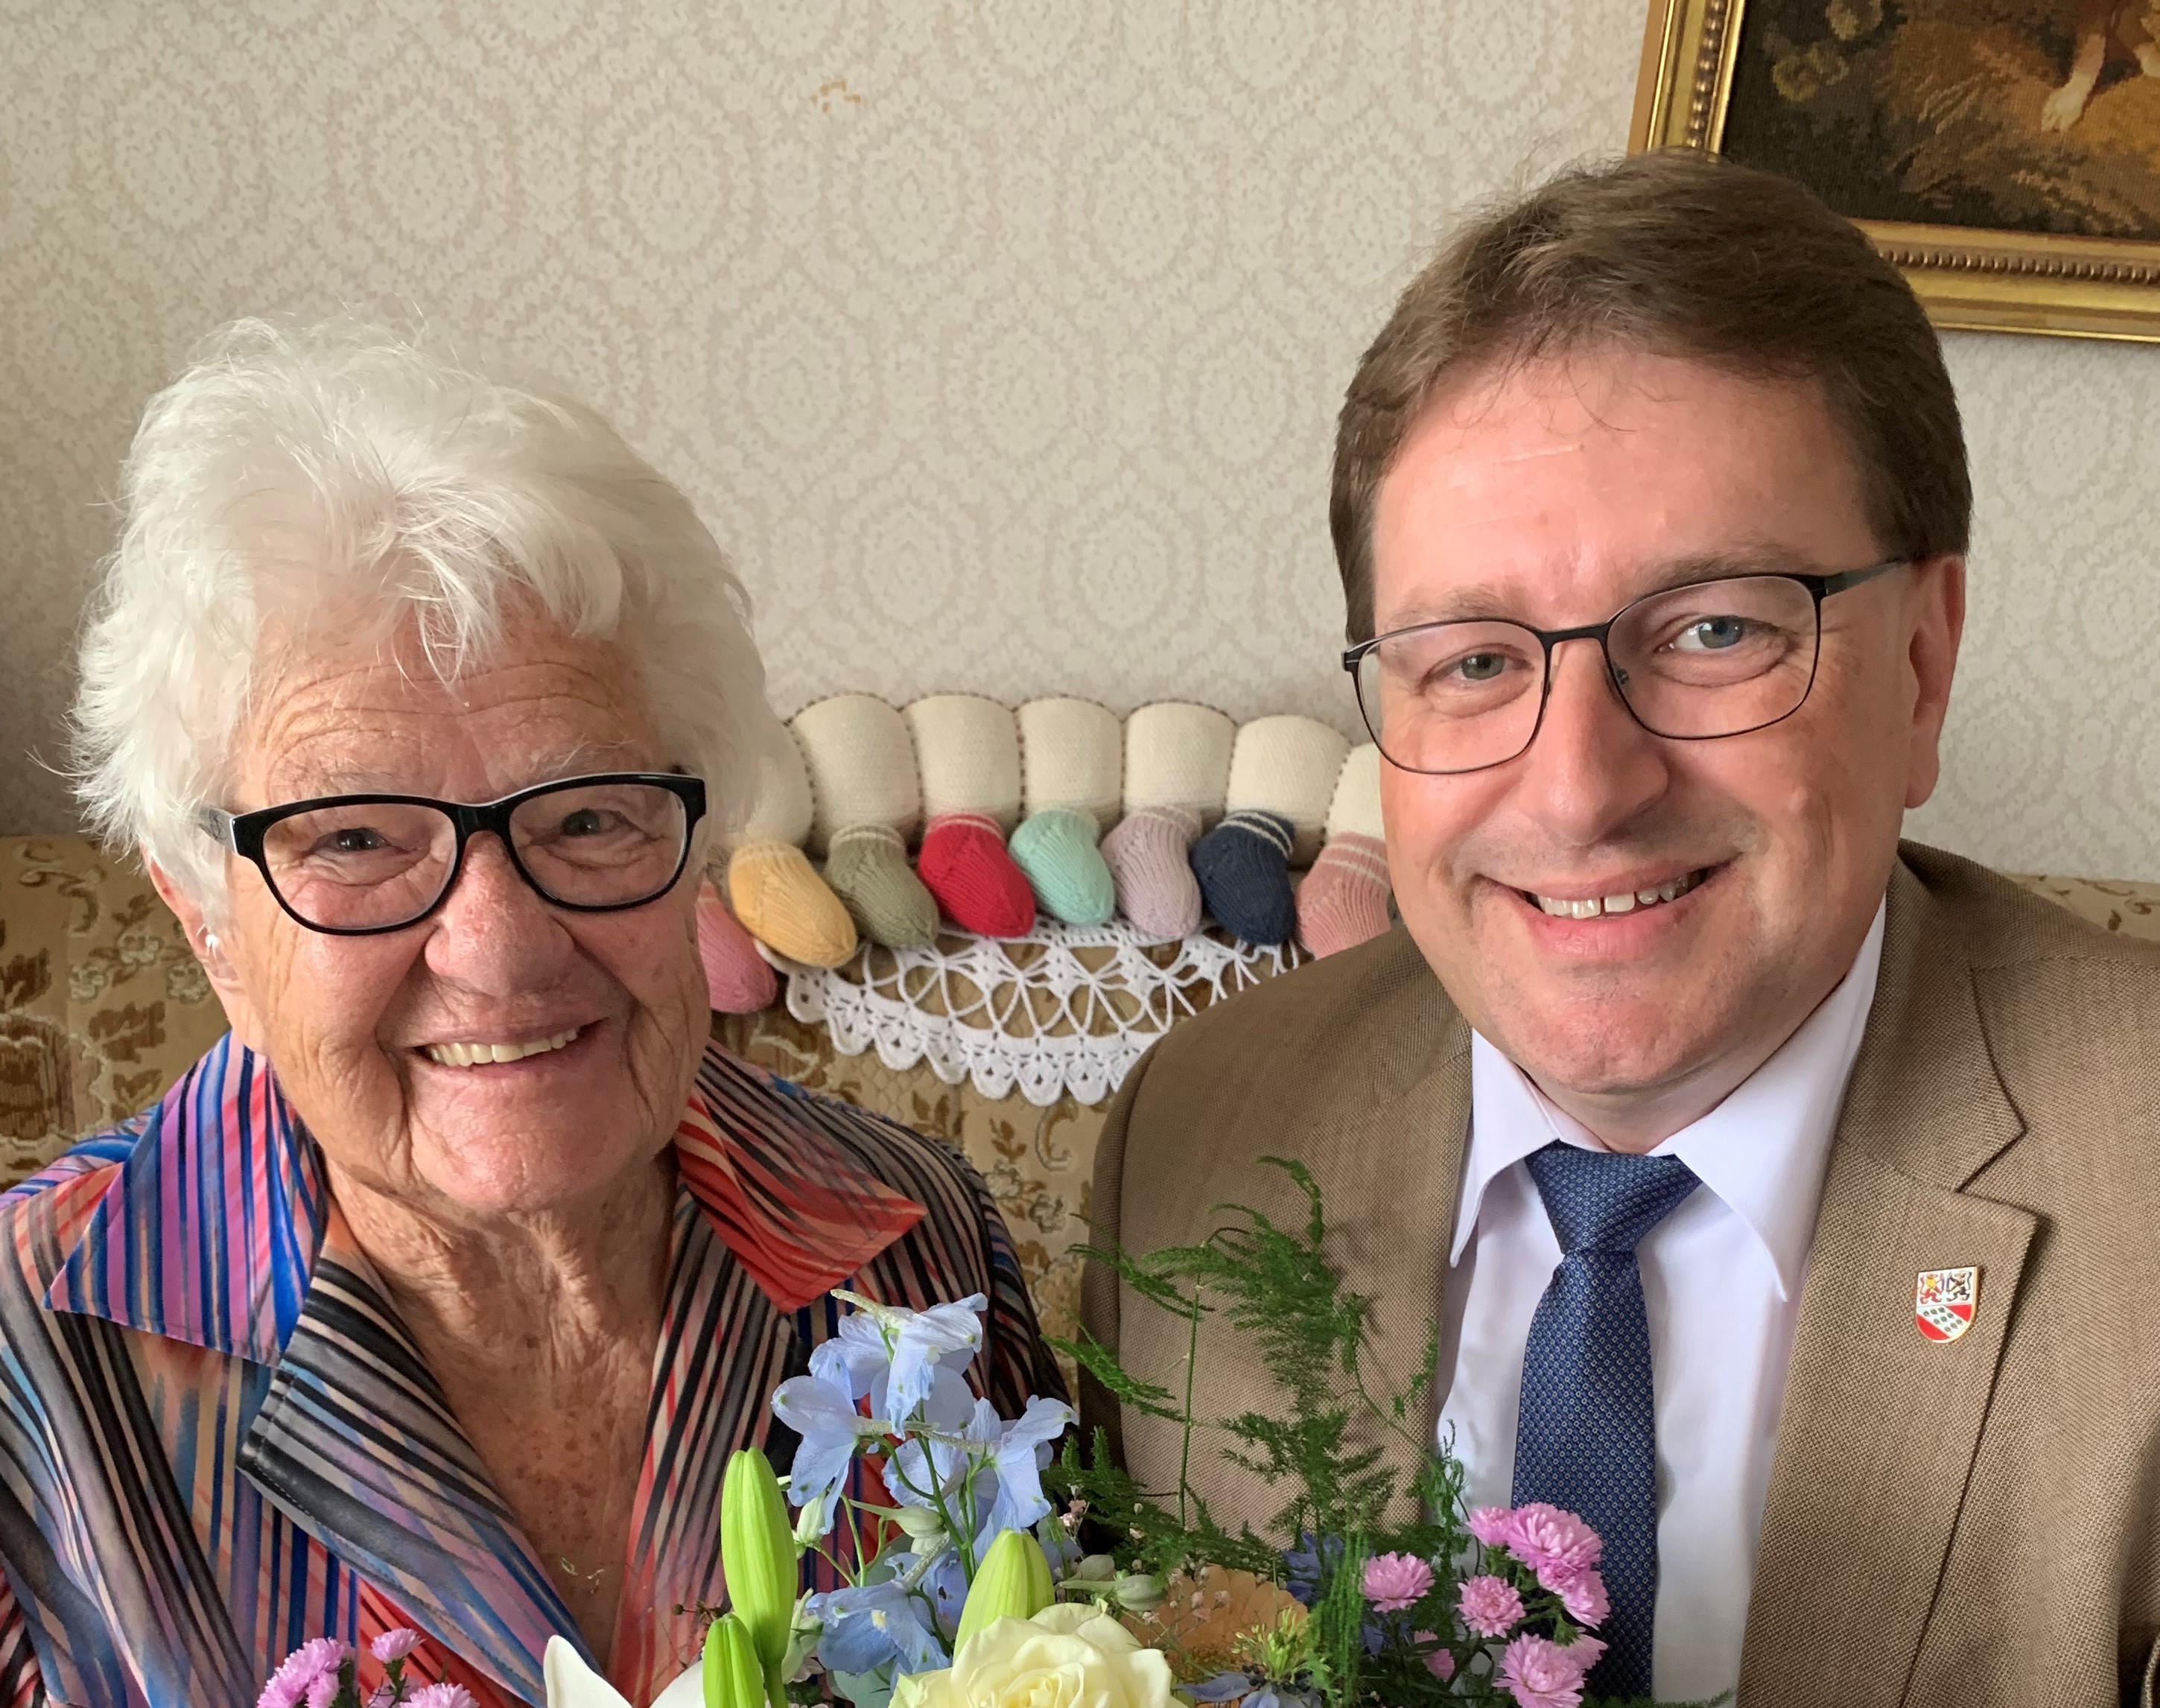 Am 10. Juli 2021, durfte Frau Emma Joss bei bester Gesundheit, ihren 95. Geburtstag feiern.
 
Die Gemeindebehörden gratulieren herzlichst dazu!